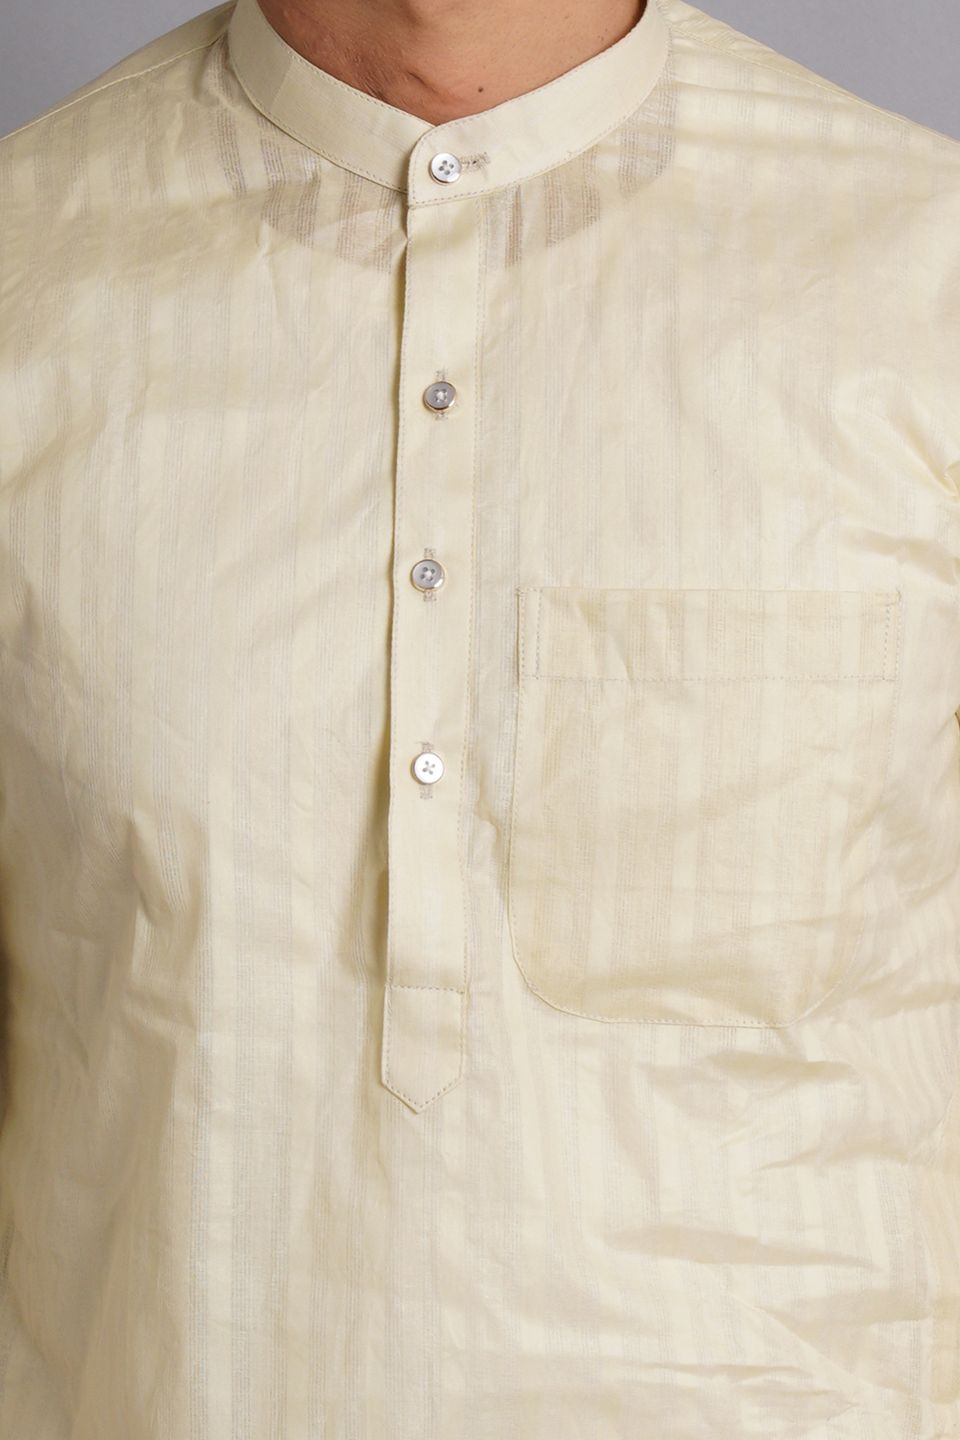 Cotton Cream Striped Long Kurta Pajama